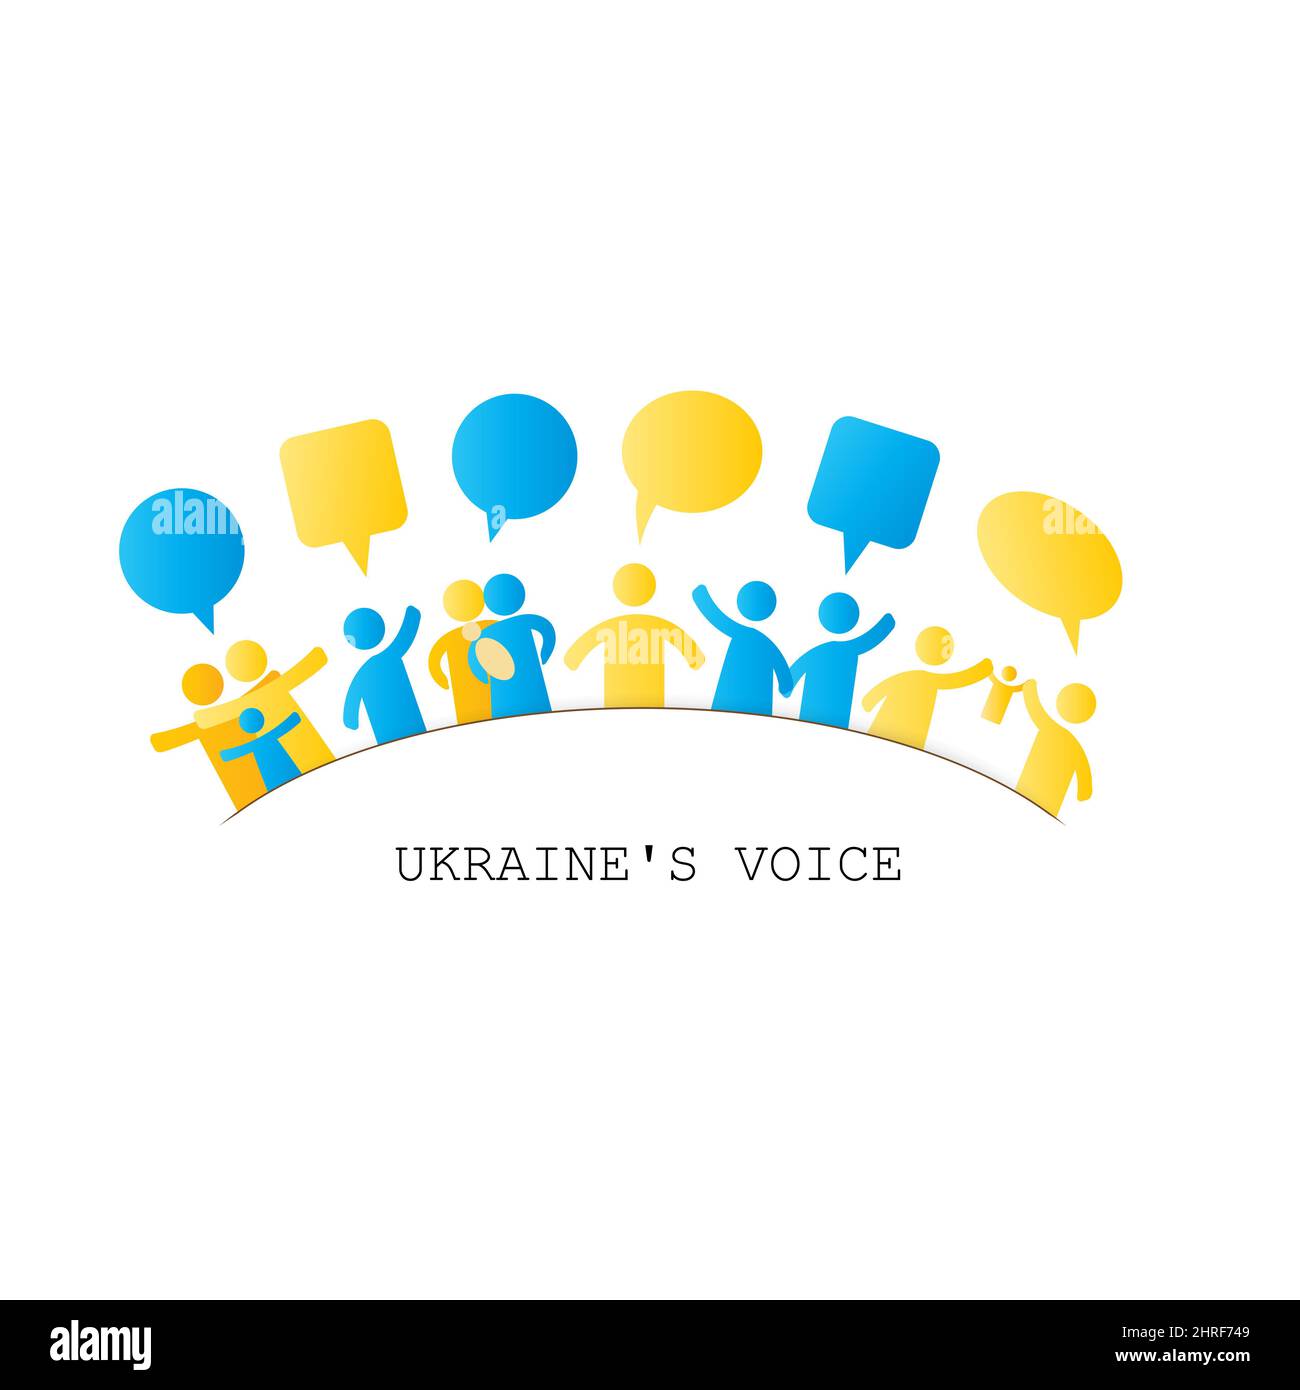 Insieme all'Ucraina. Una semplice illustrazione con persone sotto forma di icone, simboli che dimostrano solidarietà con l'Ucraina e chiedono aiuto. Nessuna guerra Foto Stock